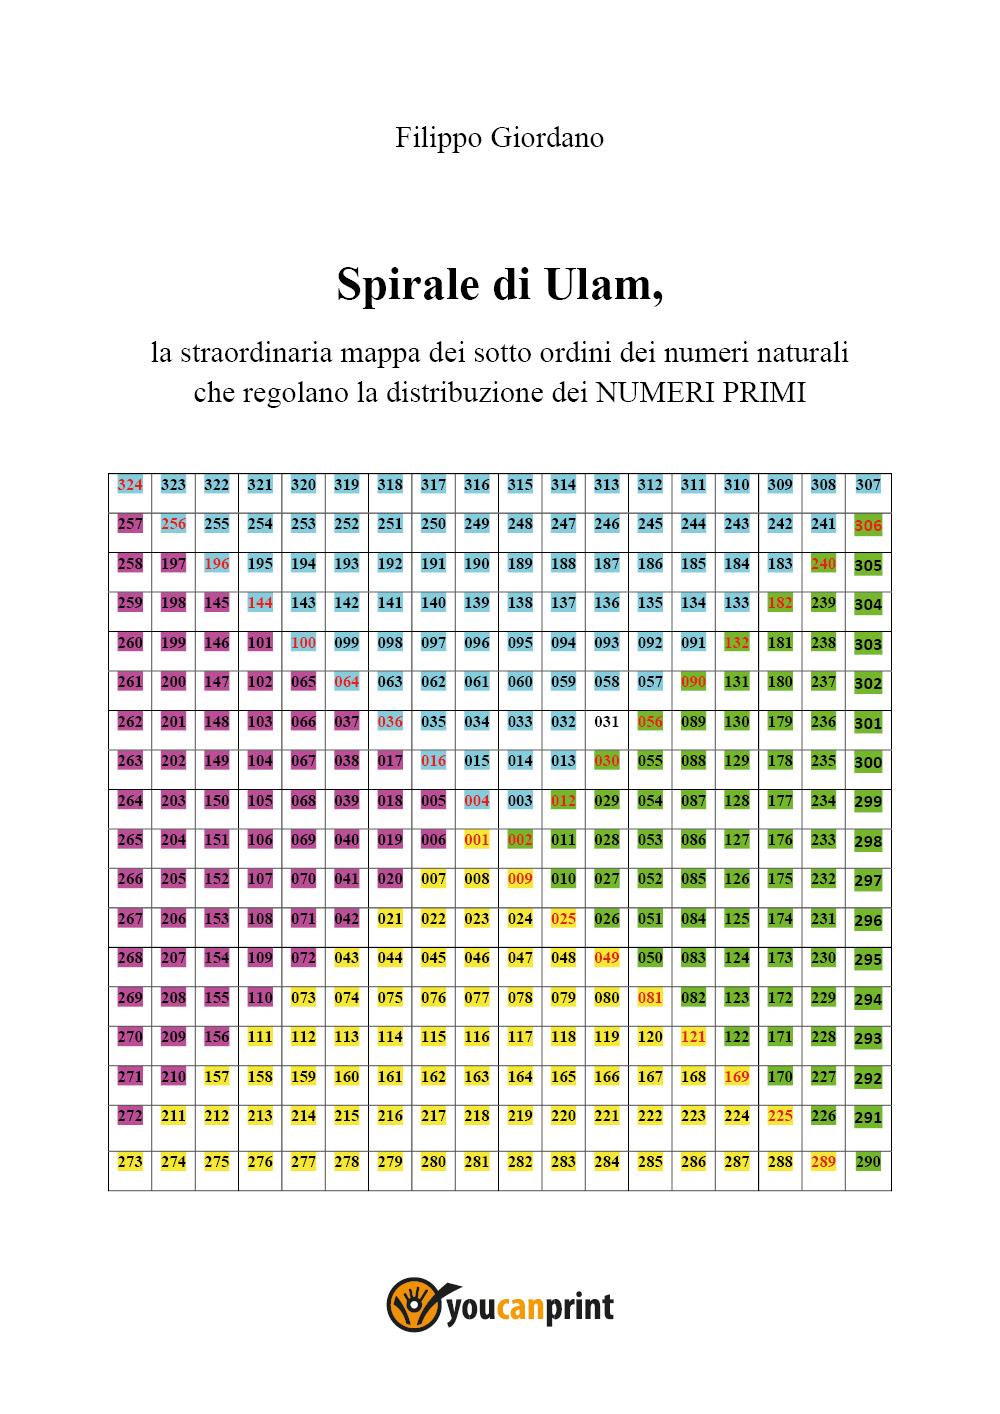 SPIRALE DI ULAM, la straordinaria mappa dei sott'ordini dei numeri naturali che regolano la distribuzione dei numeri primi